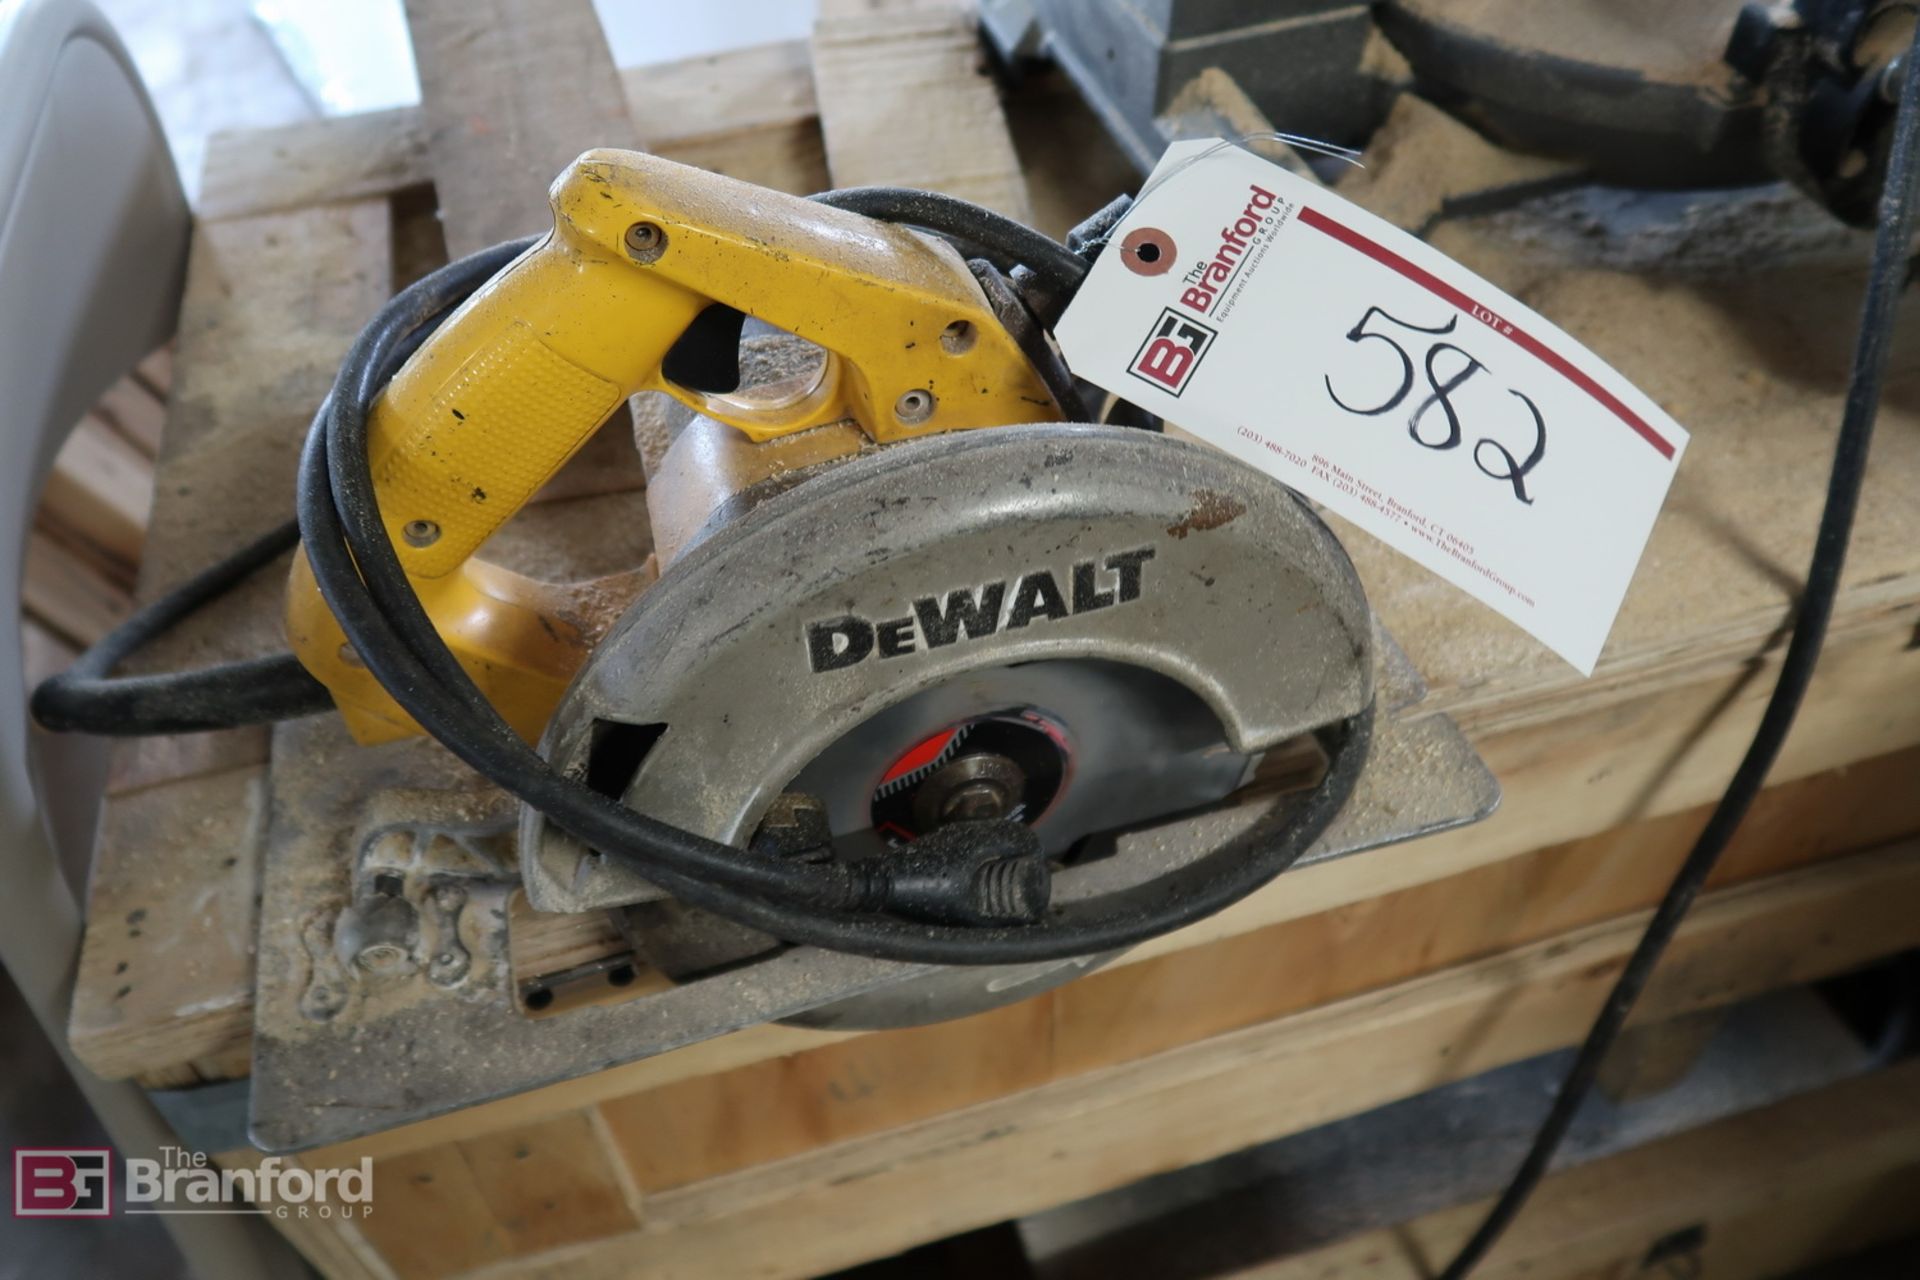 DeWalt DW364 7-1/4" Circular Saw